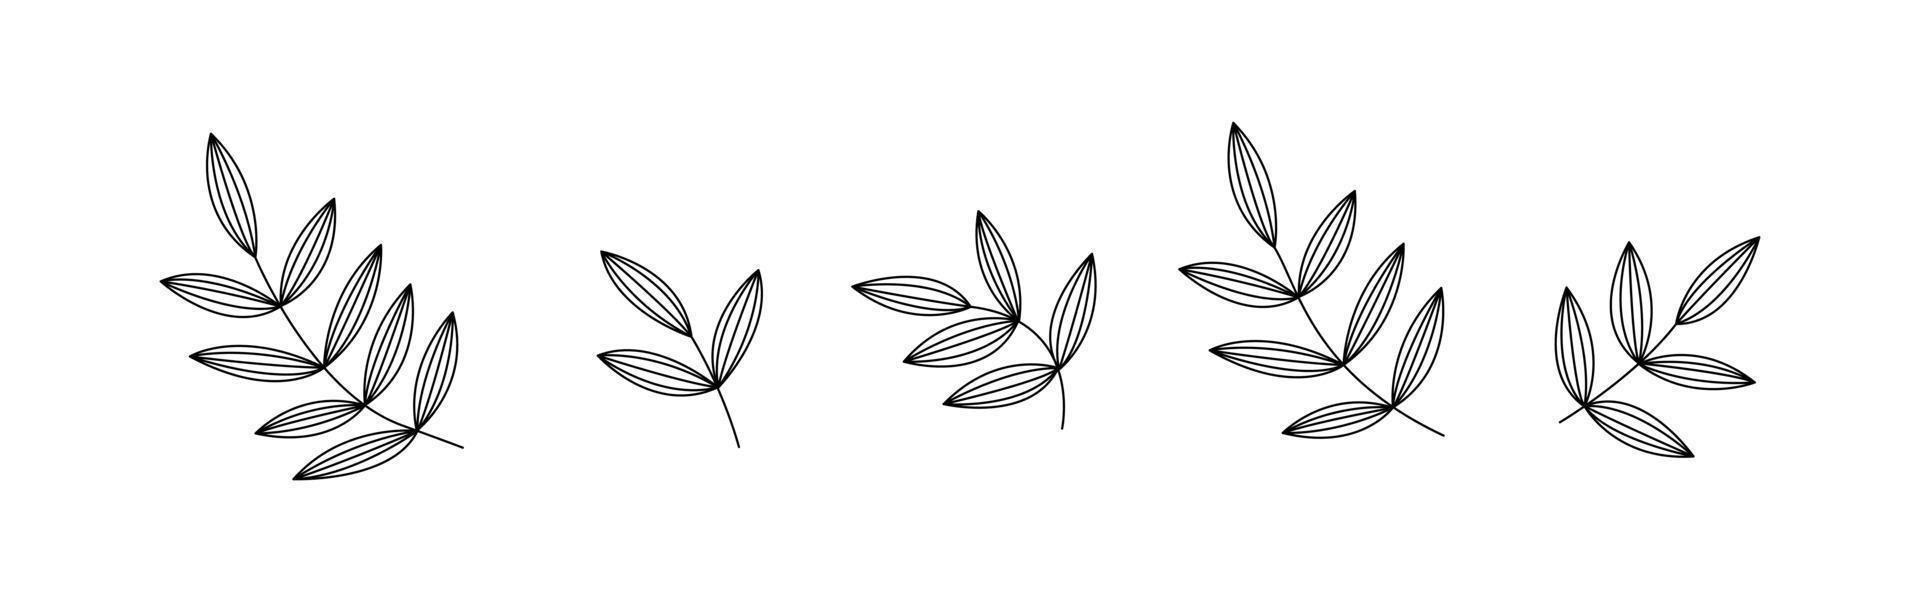 botanische bloemenborstel met blad. hand tekenen grens. abstract verlofpatroon als achtergrond. botanisch textuurontwerp voor print, kunst aan de muur en behang. vector illustratie